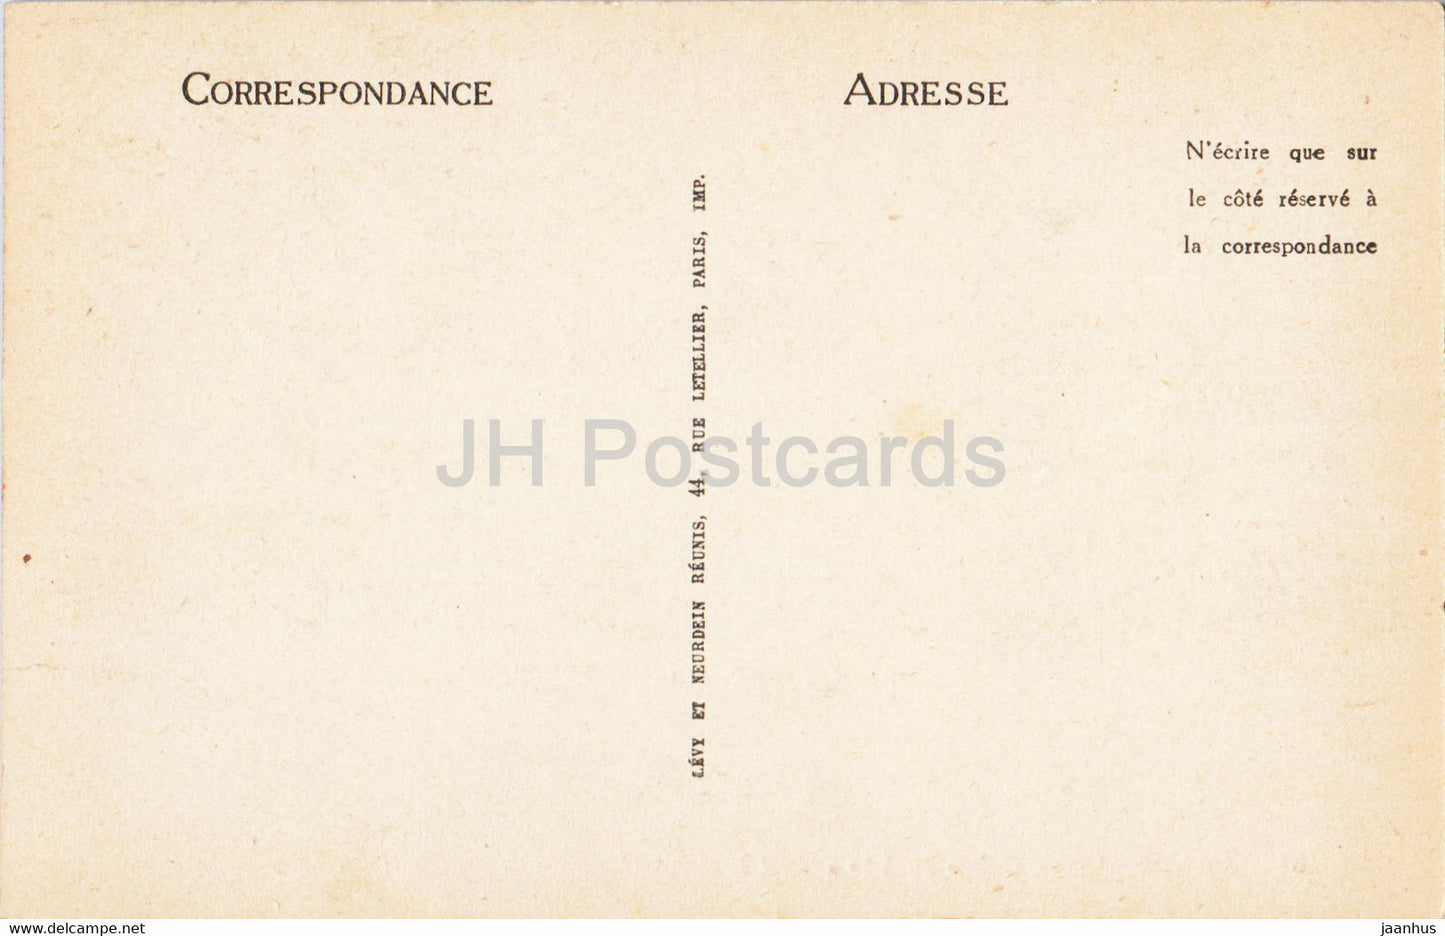 Langeais - Coffre du XV - 55 - alte Postkarte - Frankreich - unbenutzt